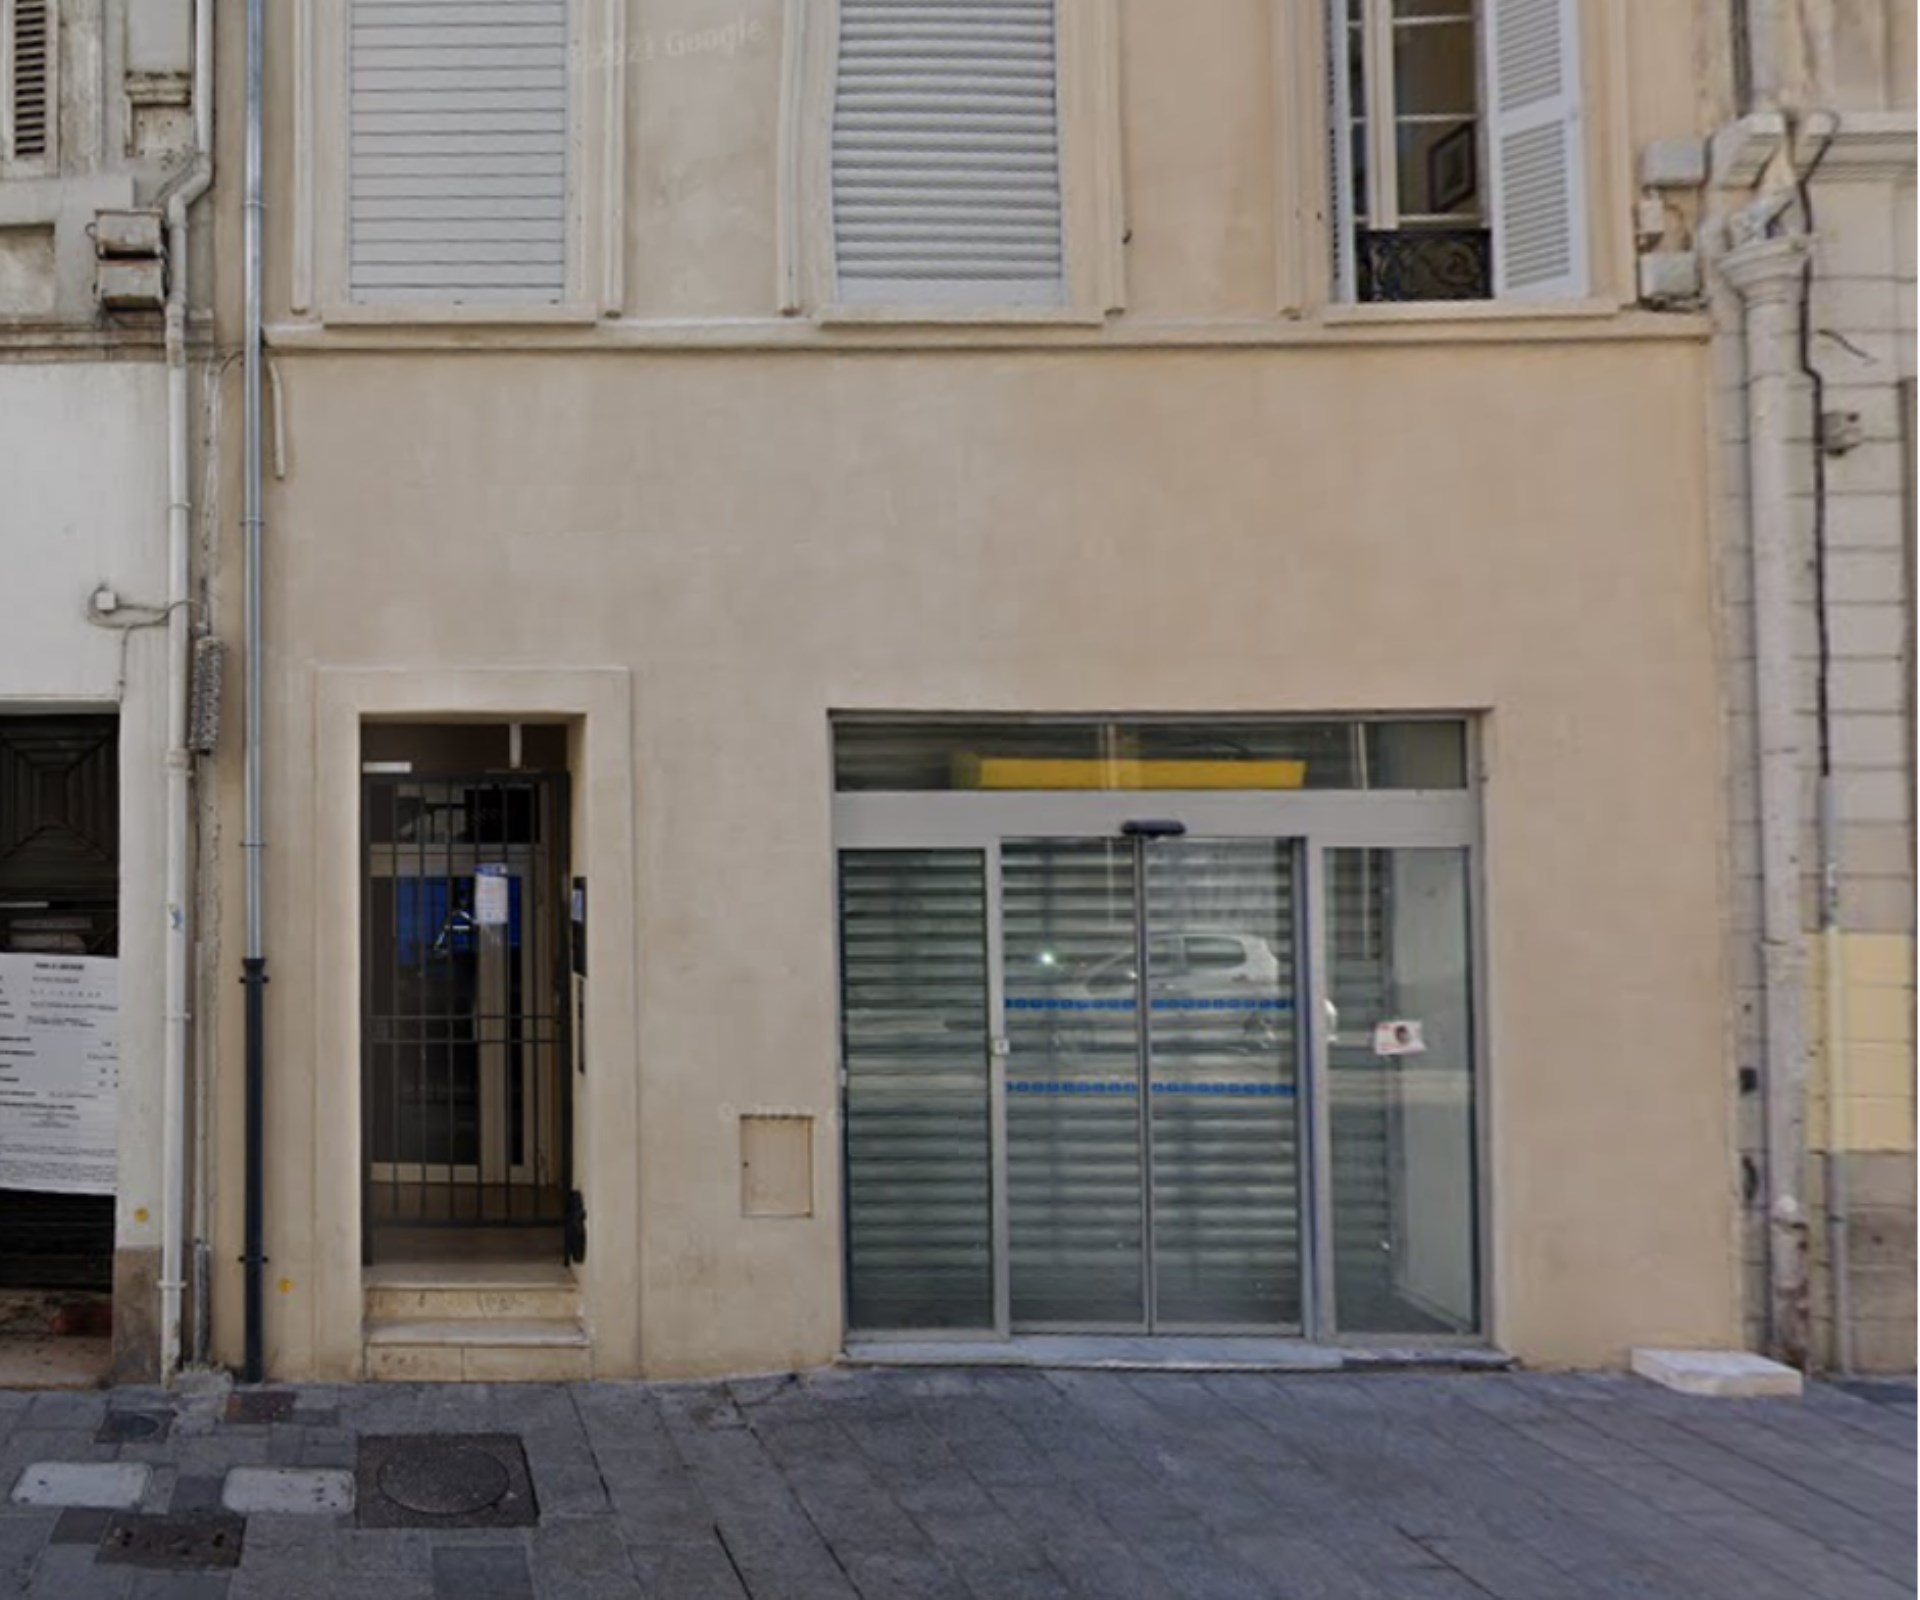 Local commercial à louer - Rue Saint Ferréol - 13001 Marseille